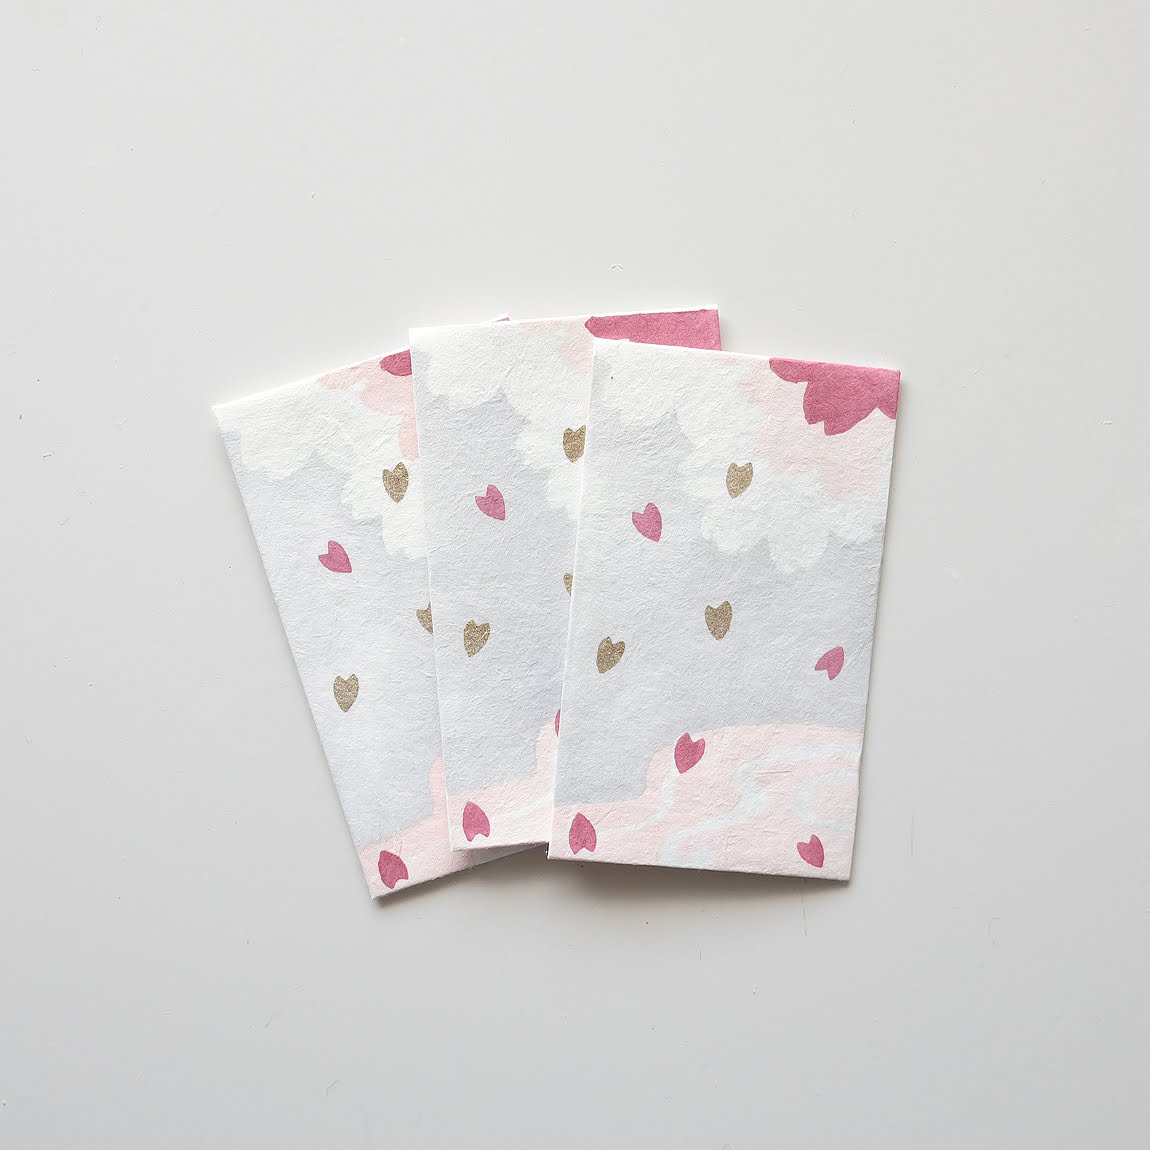 【新登場！伝統技法、型染めで一色ずつ職人が手摺りで製作しました！】手摺り型染めぽち袋 流水に桜